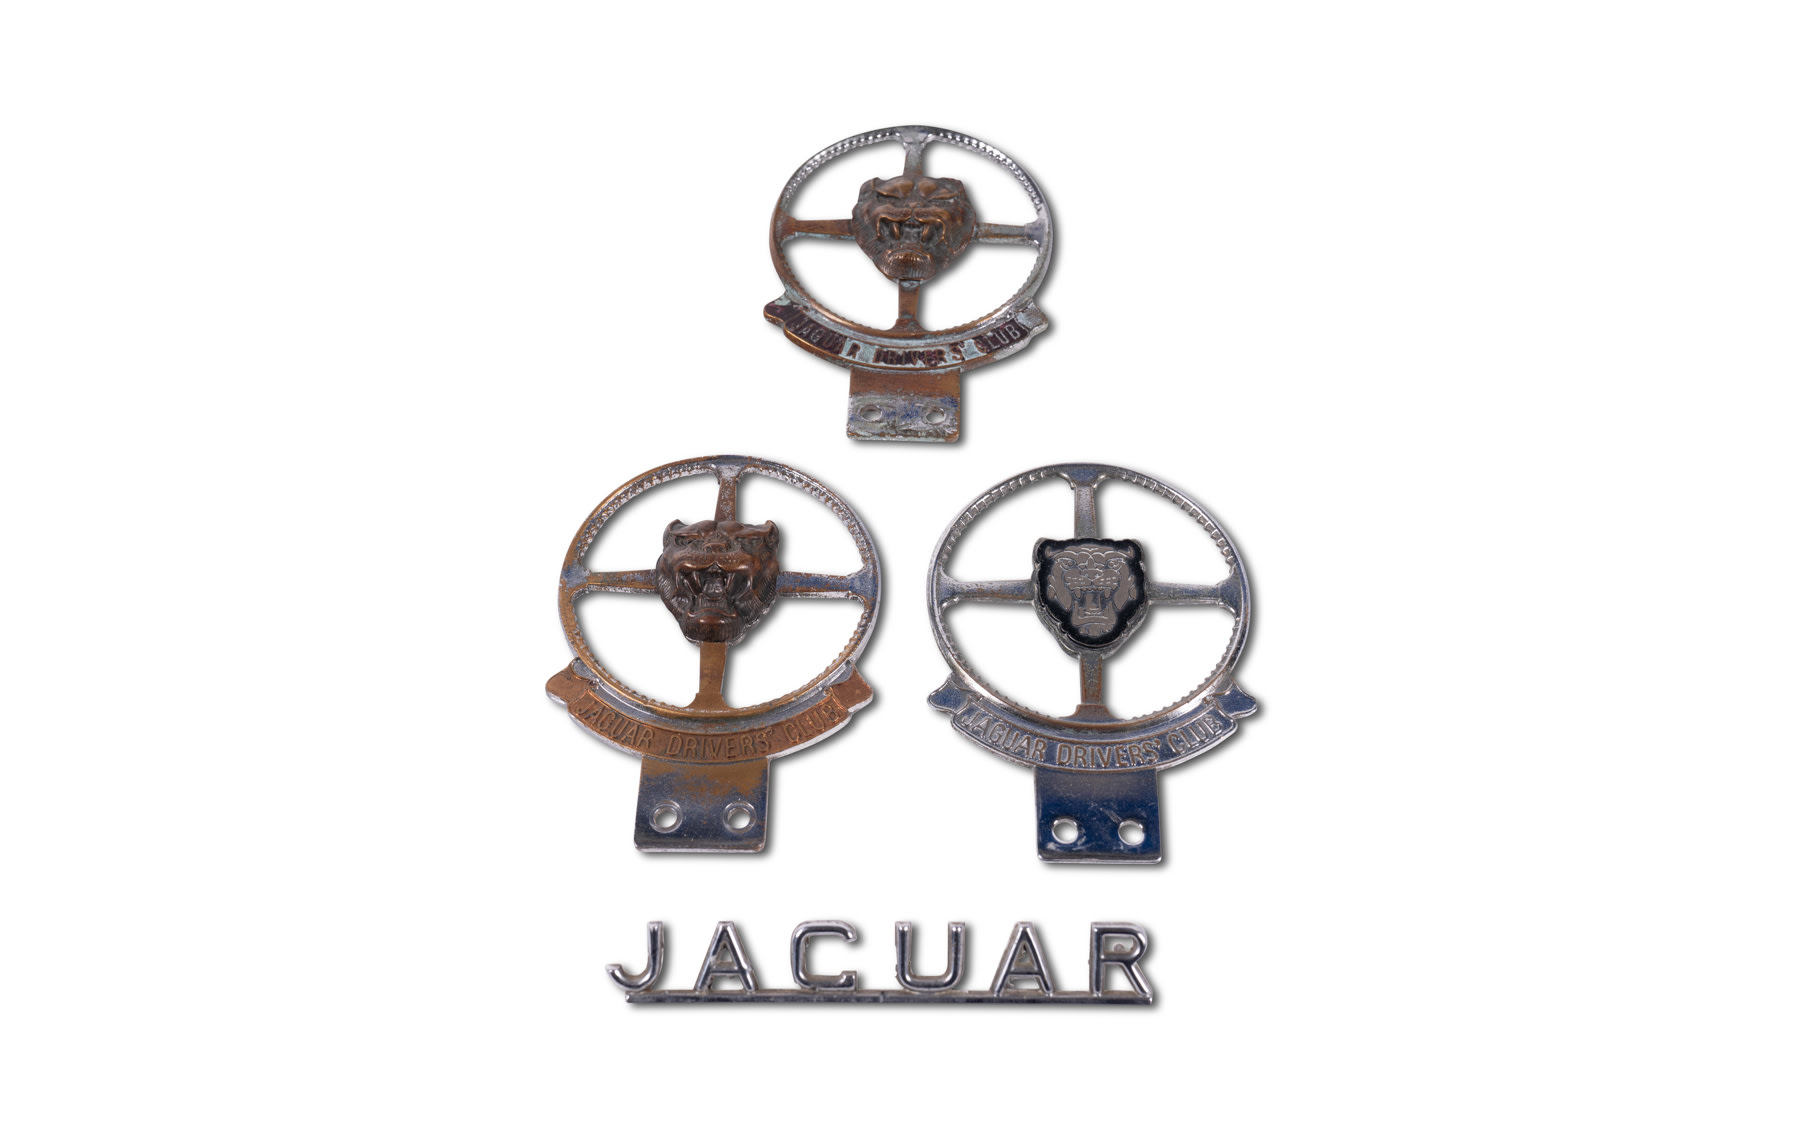 Jaguar Drivers Club Badges and Jaguar Script